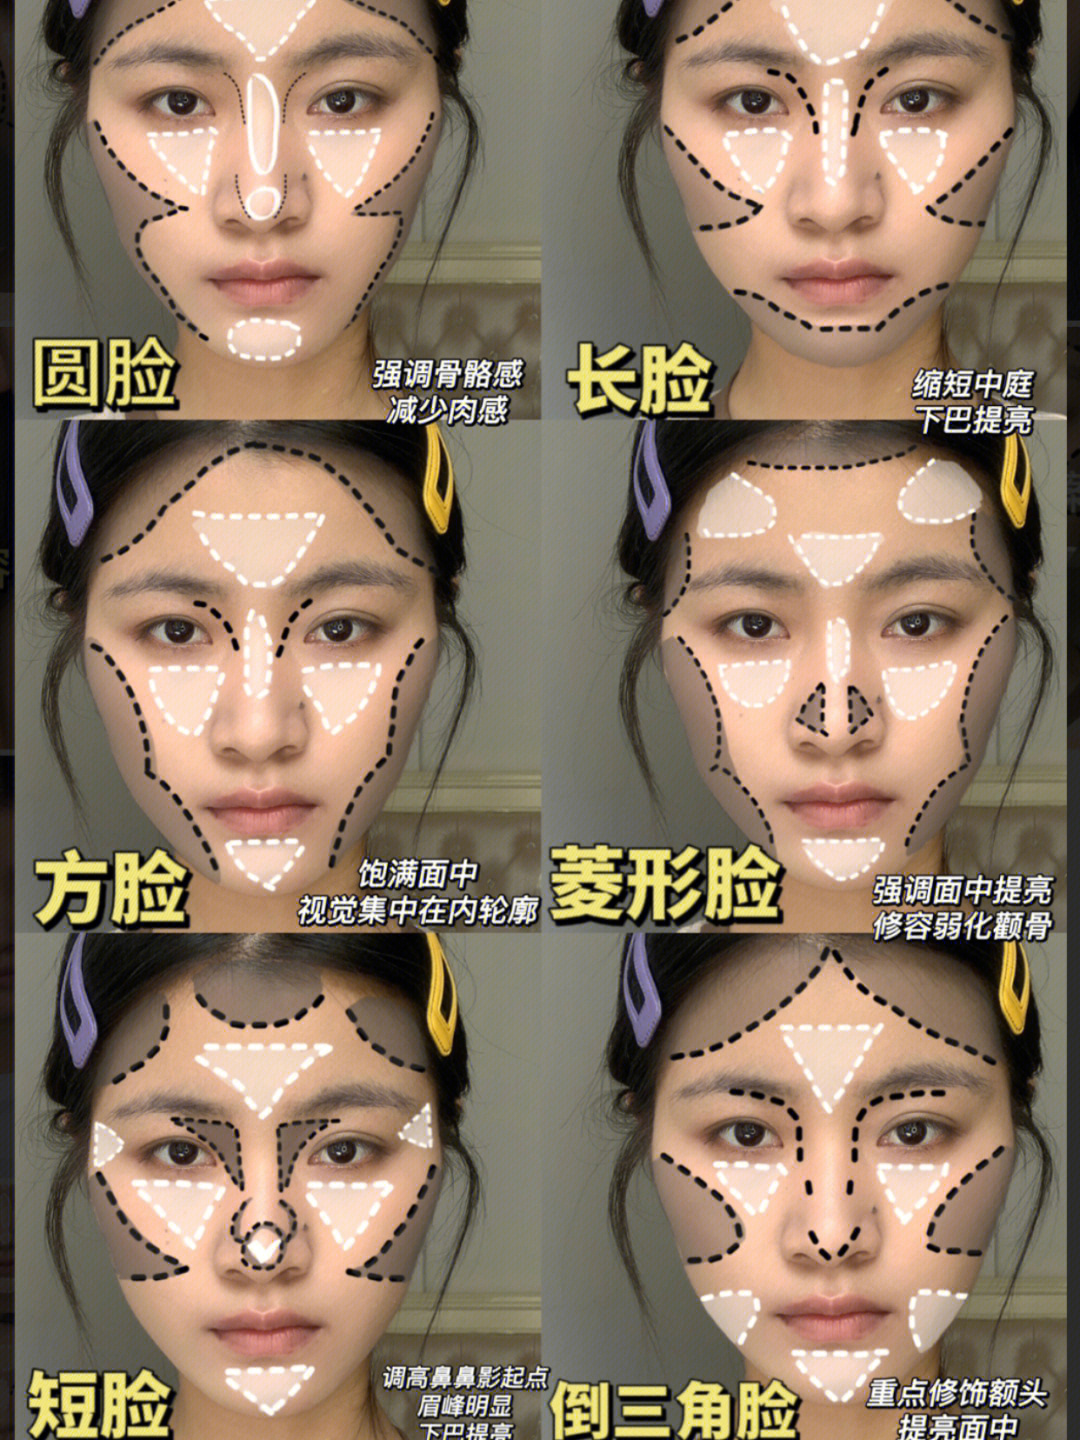 新手必看根据六种不同脸型修容教程